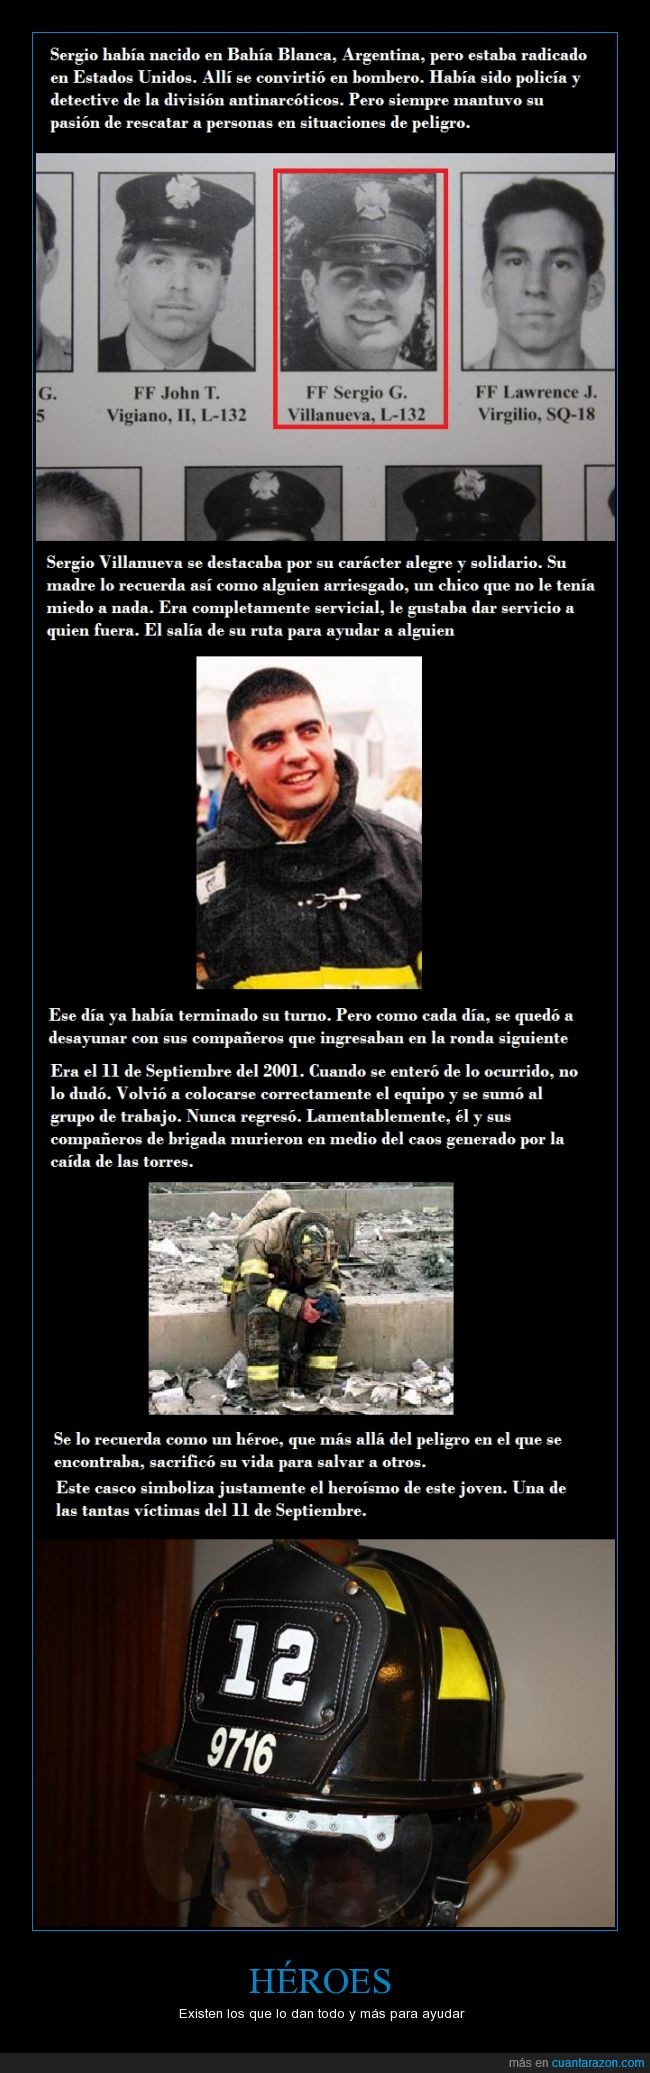 11 septiembre,2001,atentado,12,sergio villanueva,héroe,bomberos